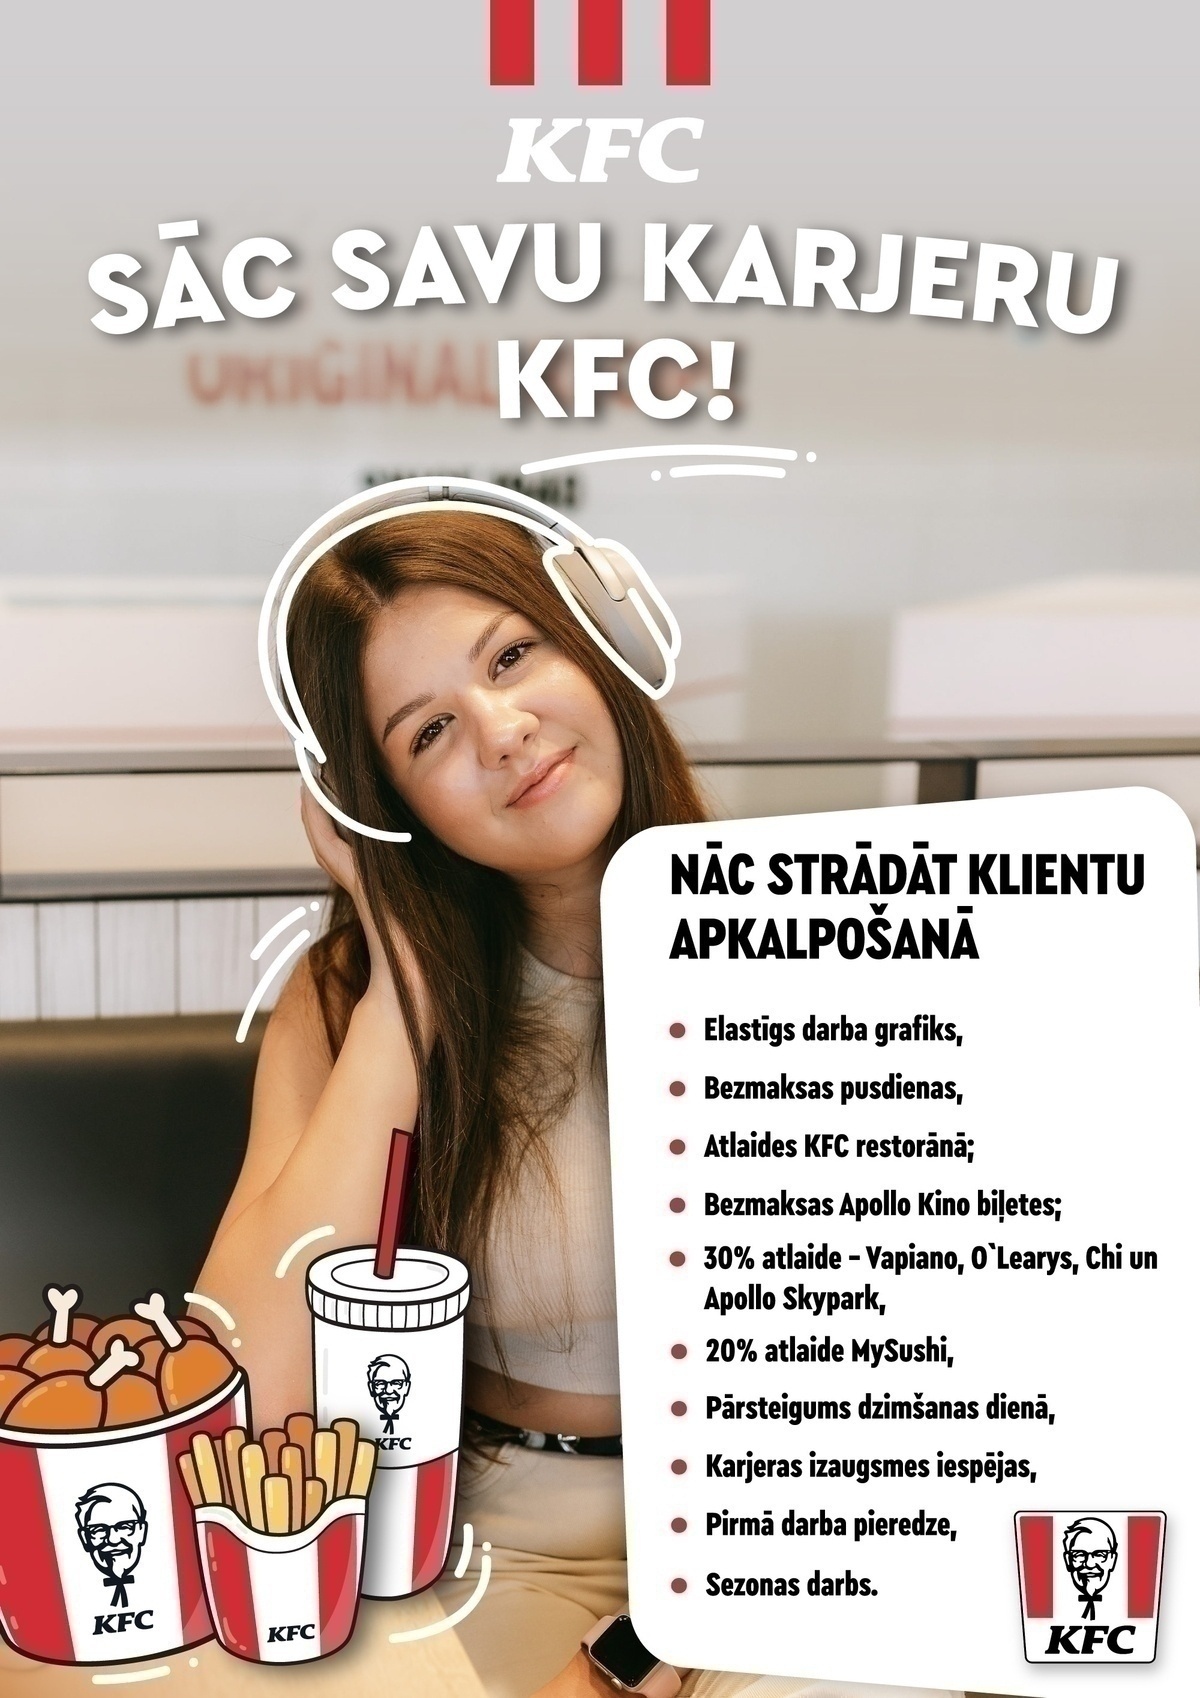 KFC Pārdevējs/-a "KFC" restorānā (TC "Alfa Akropole")